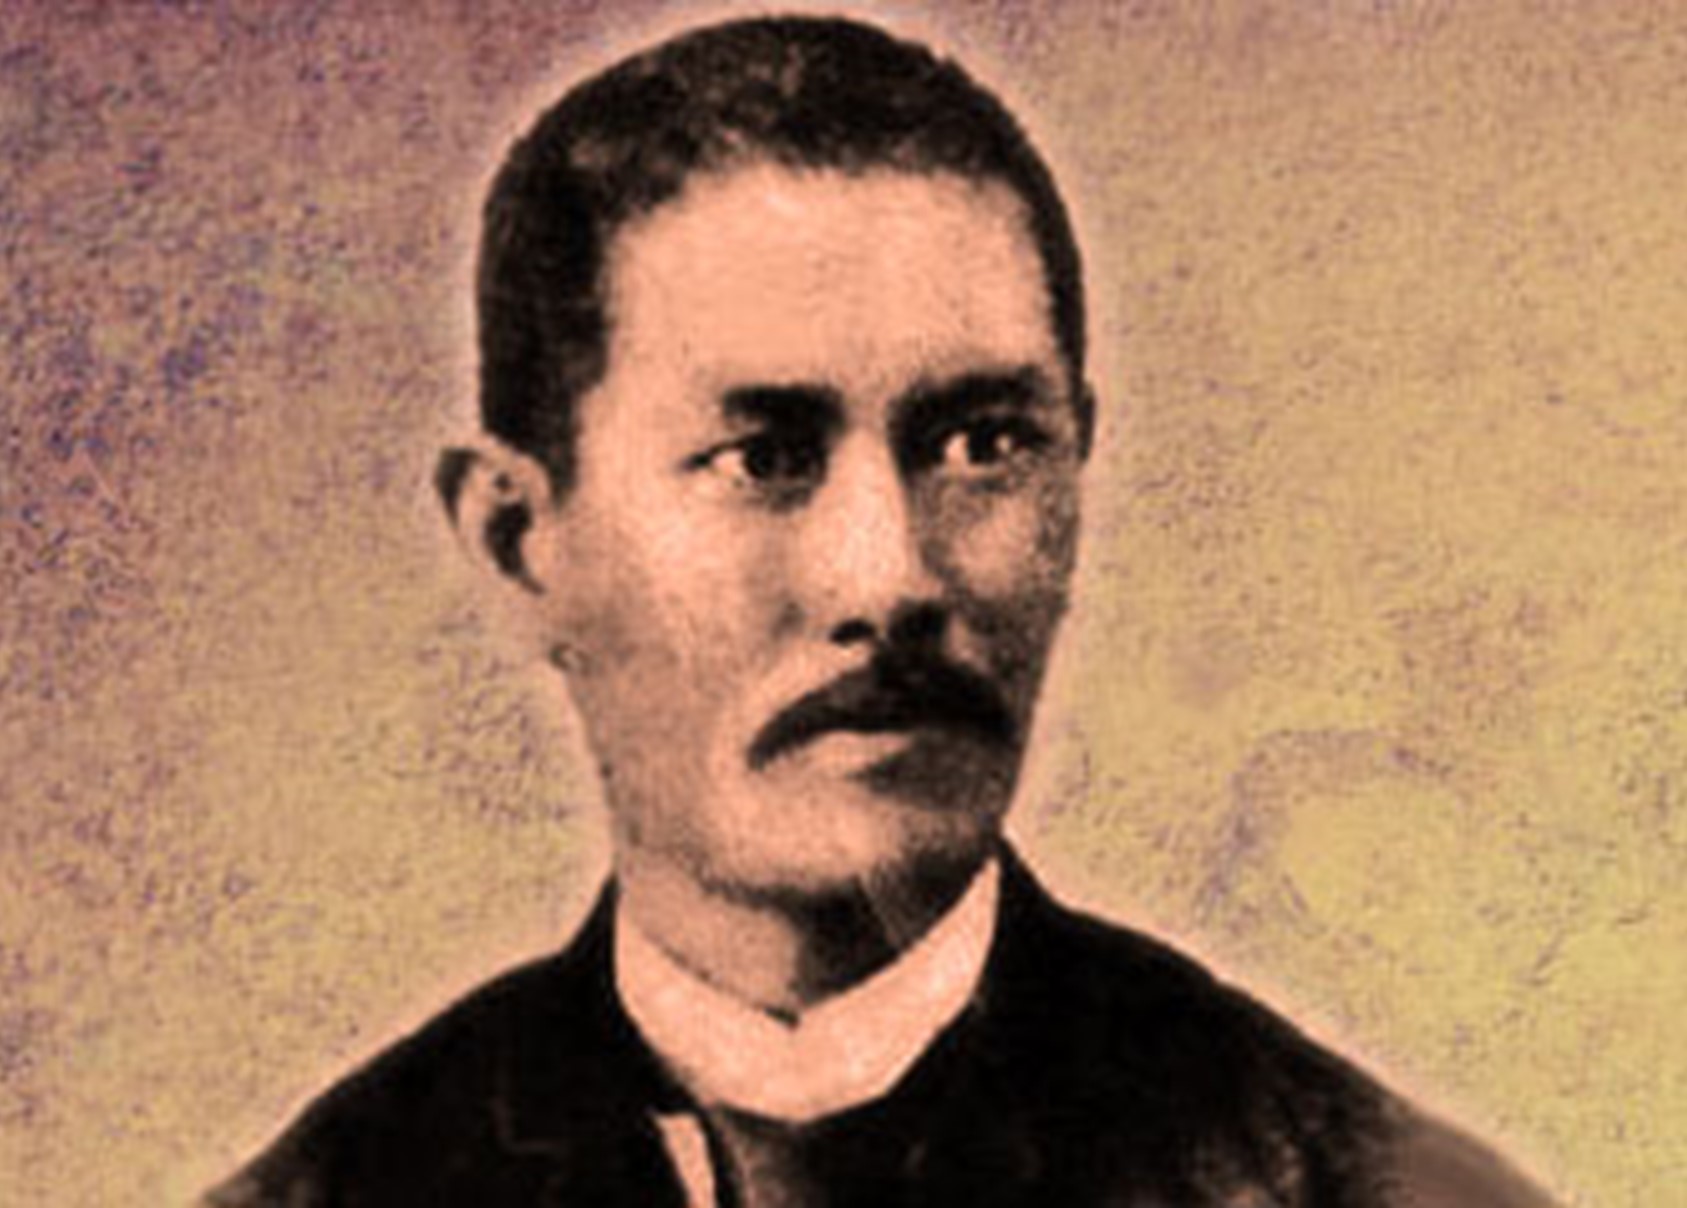 18 December, 1856 – Pinoy Stop